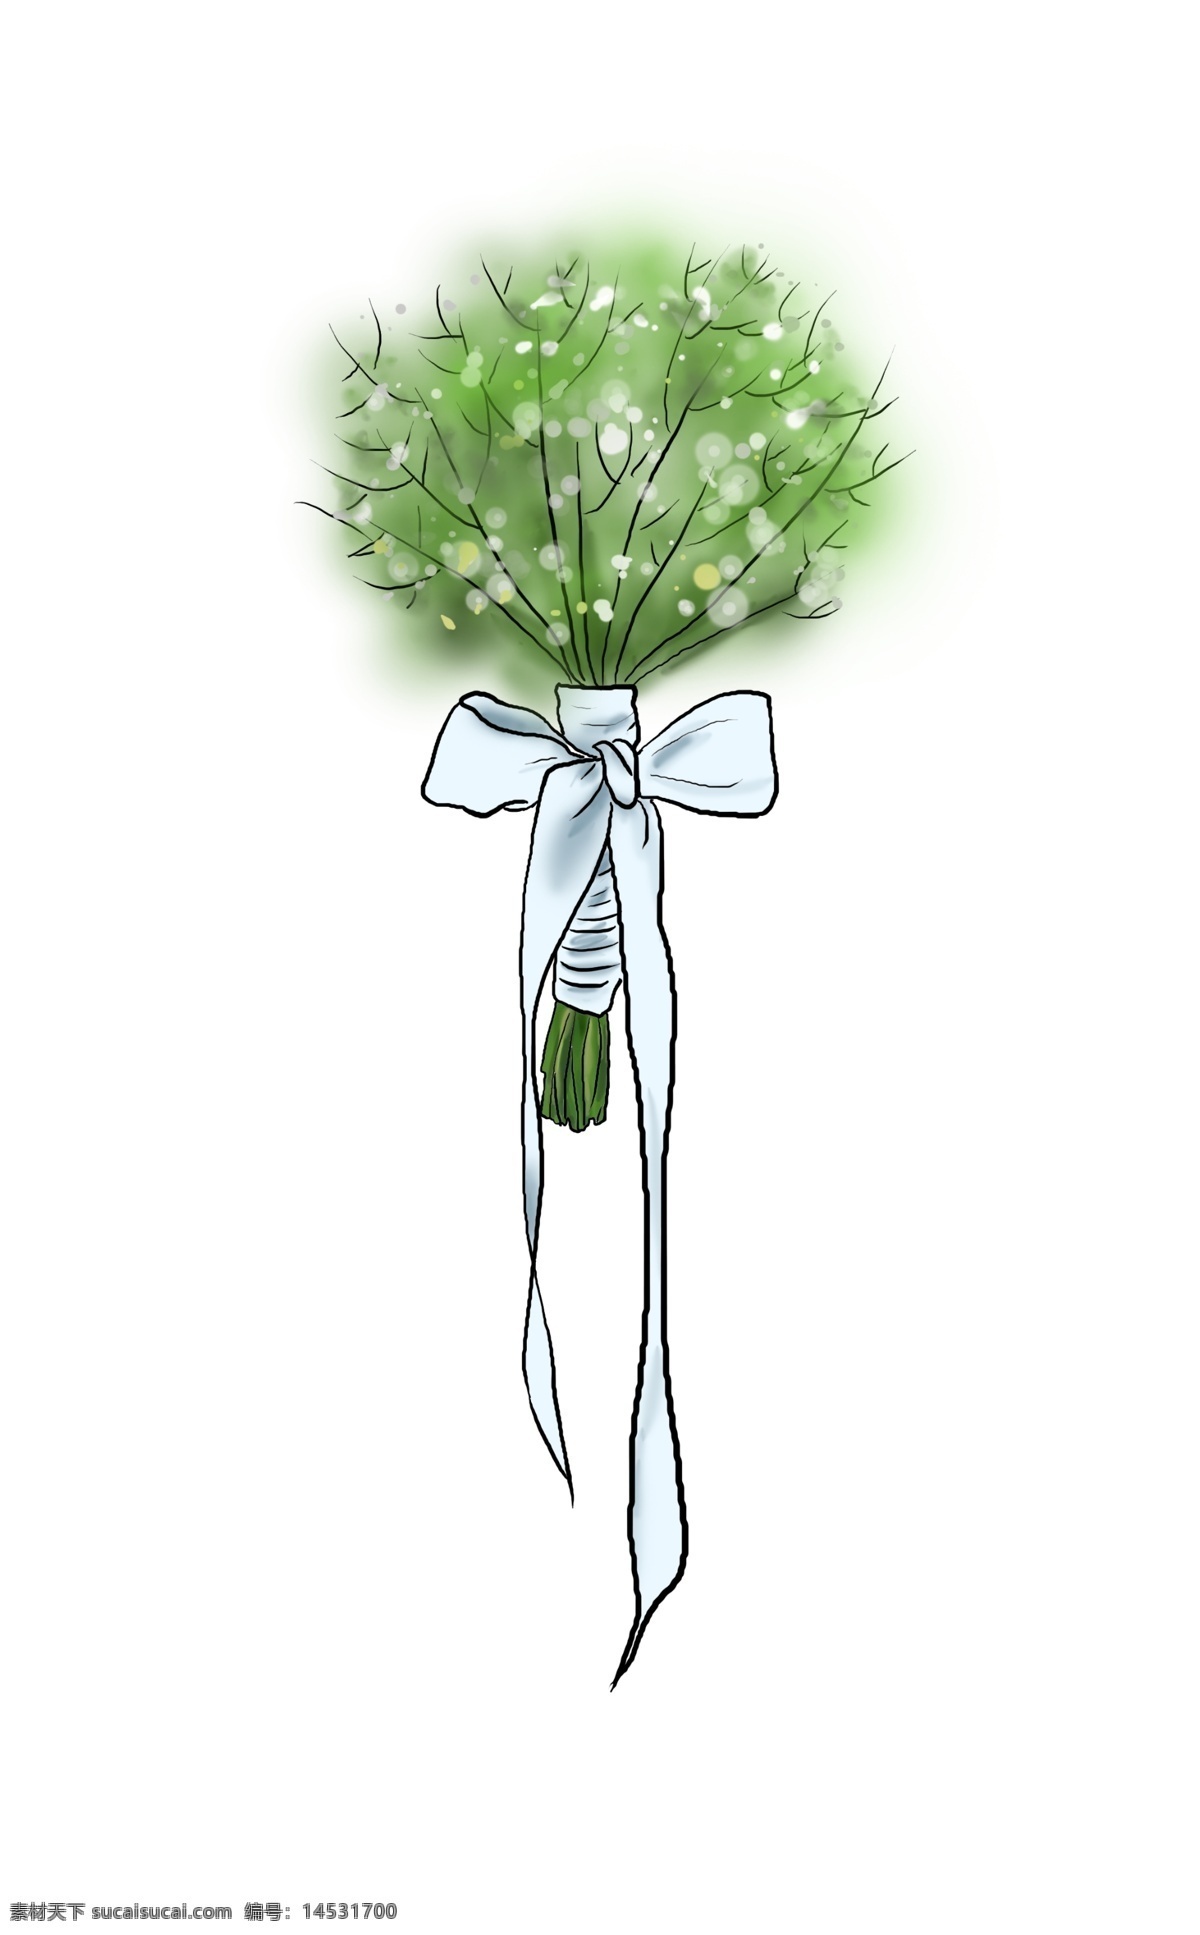 手绘 白色 清新 满天星 水墨 彩绘 插画 绿色 自然 礼物 植物 种植 春天 女生 爱情 装饰 韩风 花束